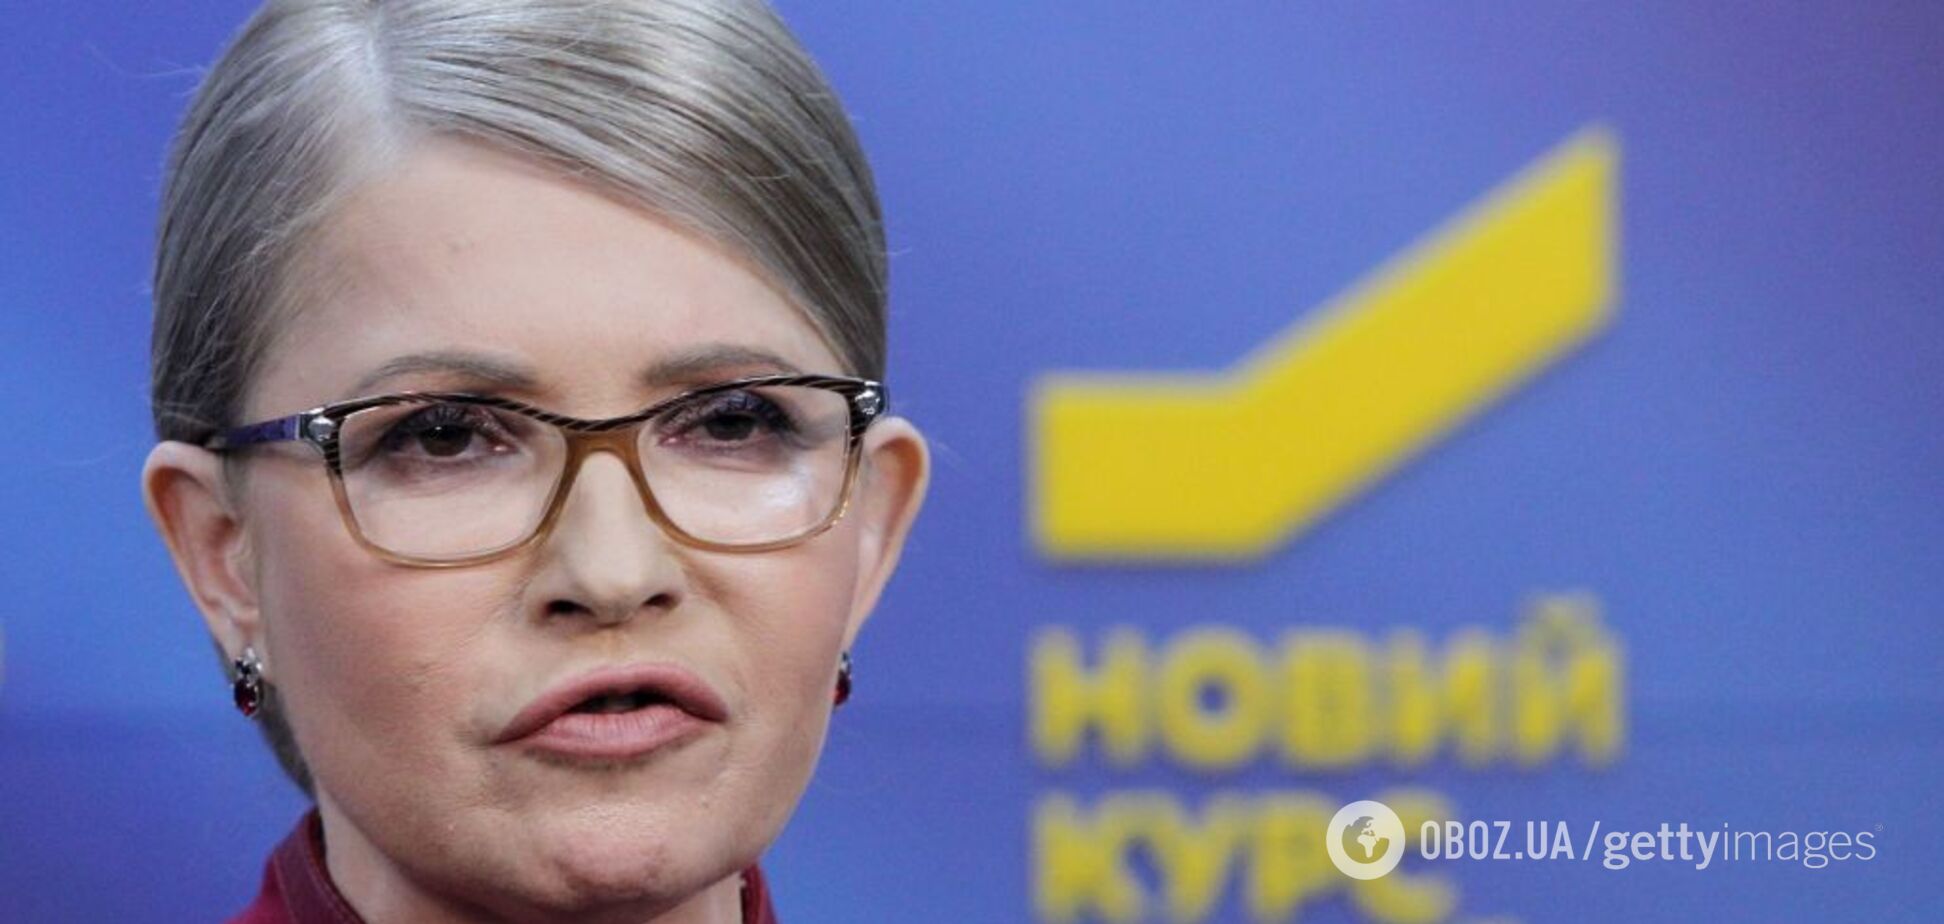 Коса вернулась: Тимошенко появилась на публике с известной прической. Фото